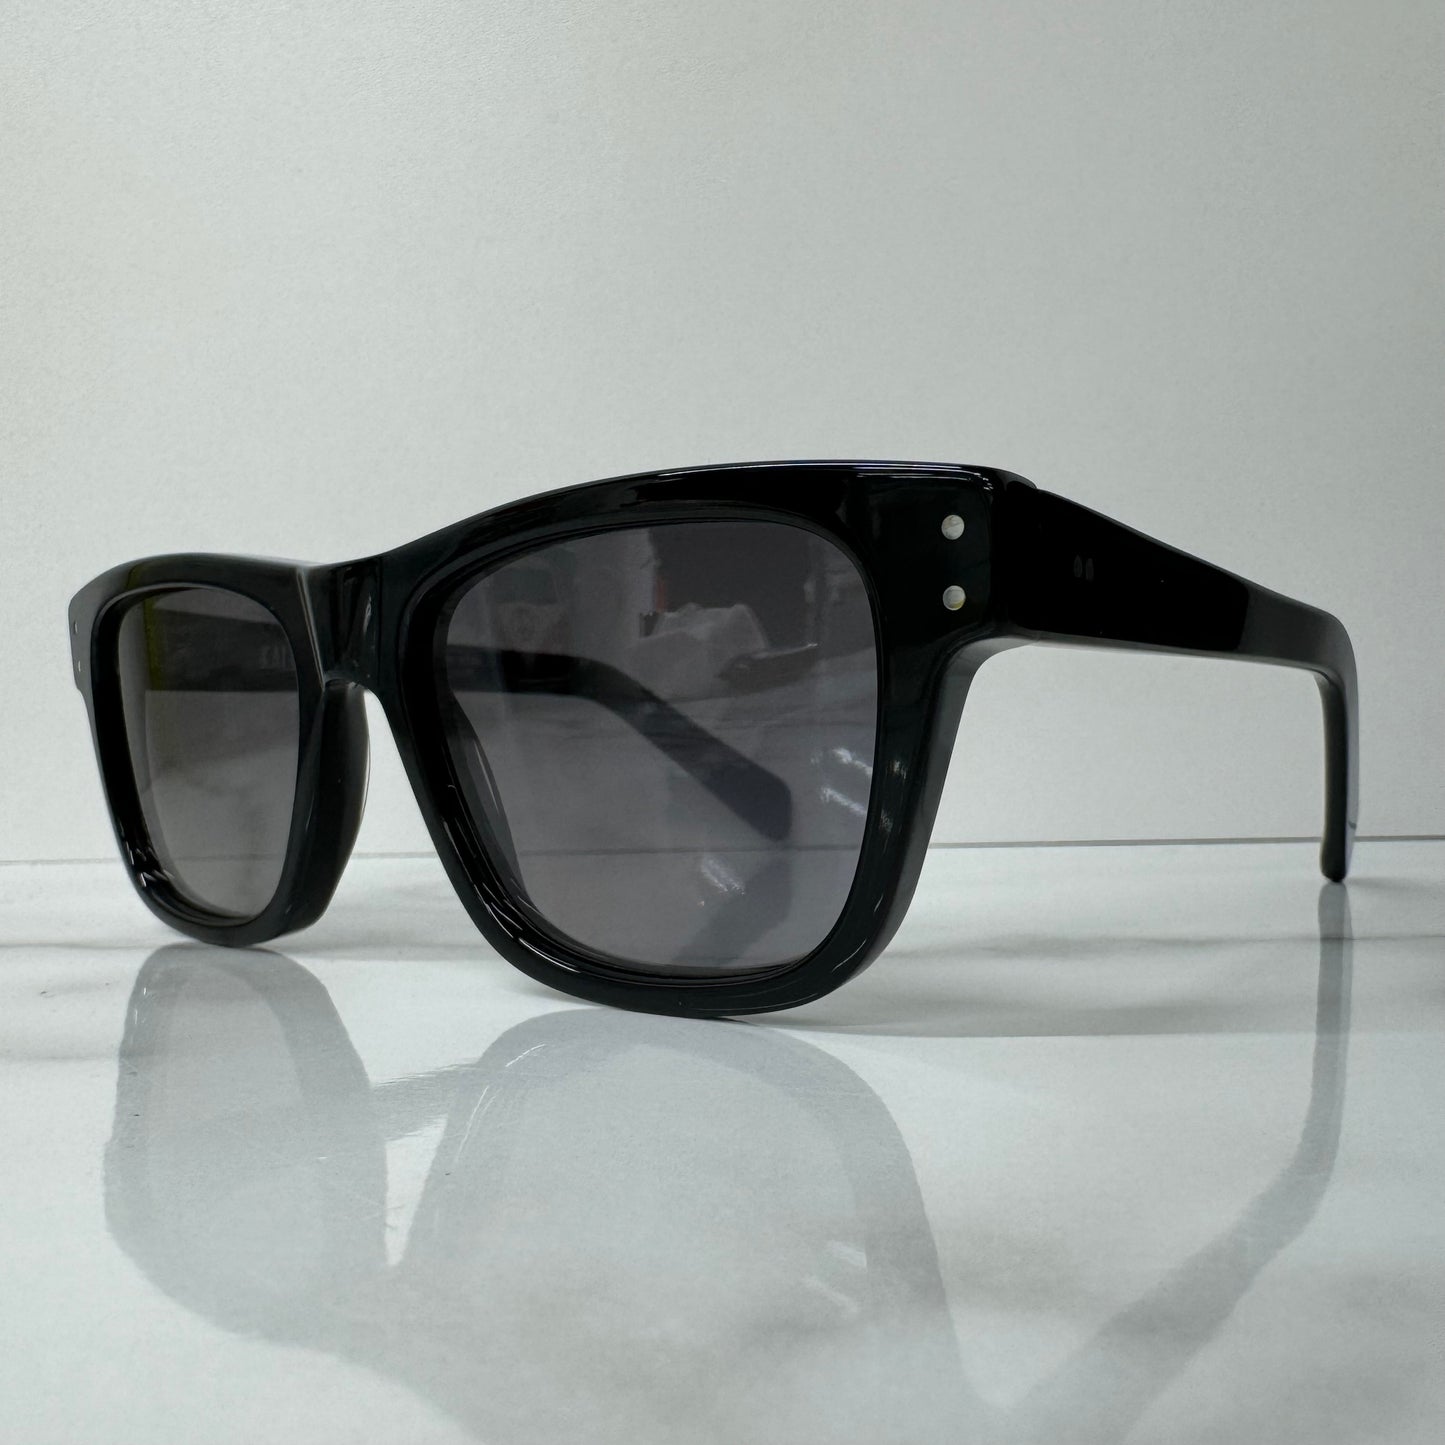 Kaleos Gentry Sunglasses CAT3 Unisex Black Square Acetate Grey Tinted Lens 54mm